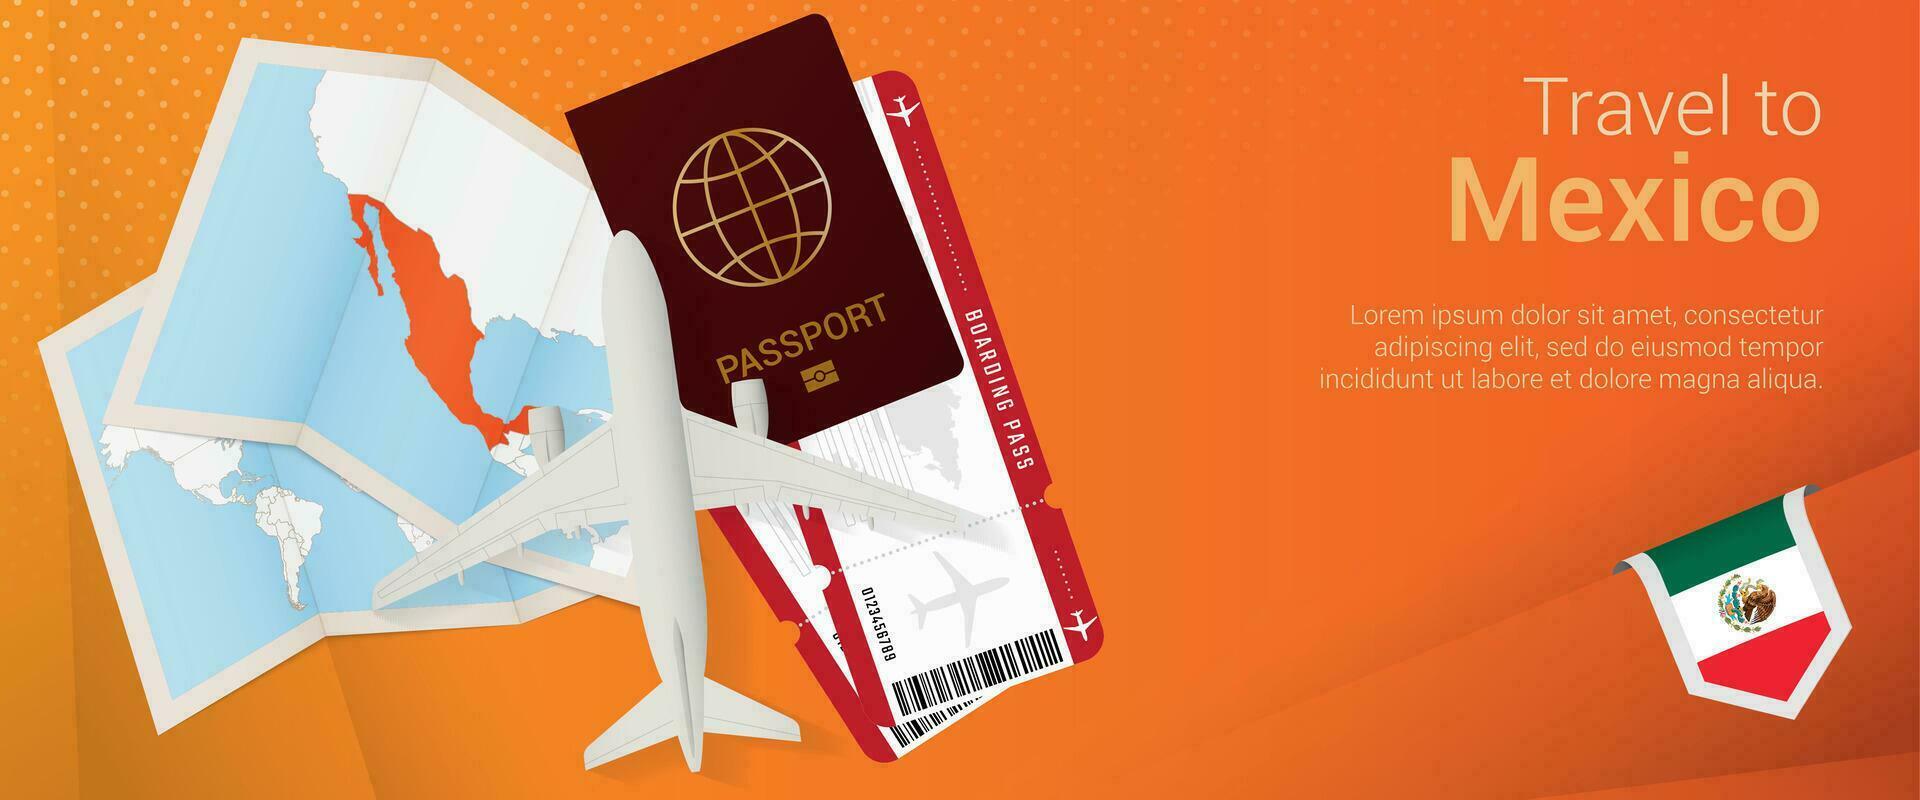 Reise zu Mexiko Pop-under Banner. Ausflug Banner mit Reisepass, Eintrittskarten, Flugzeug, Einsteigen passieren, Karte und Flagge von Mexiko. vektor